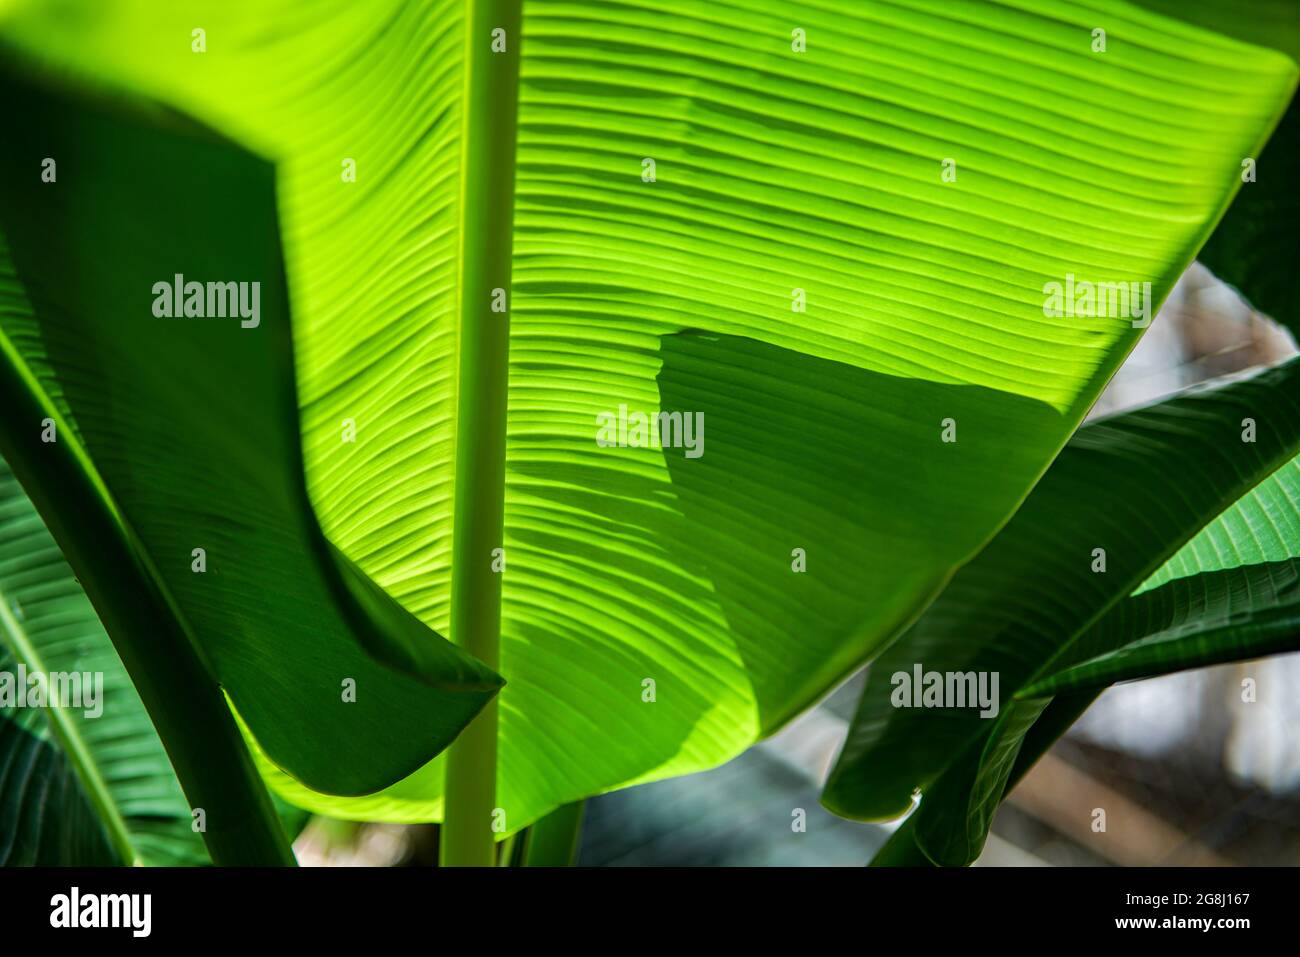 Feuille de banane verte dans le sud du Vietnam Banque D'Images